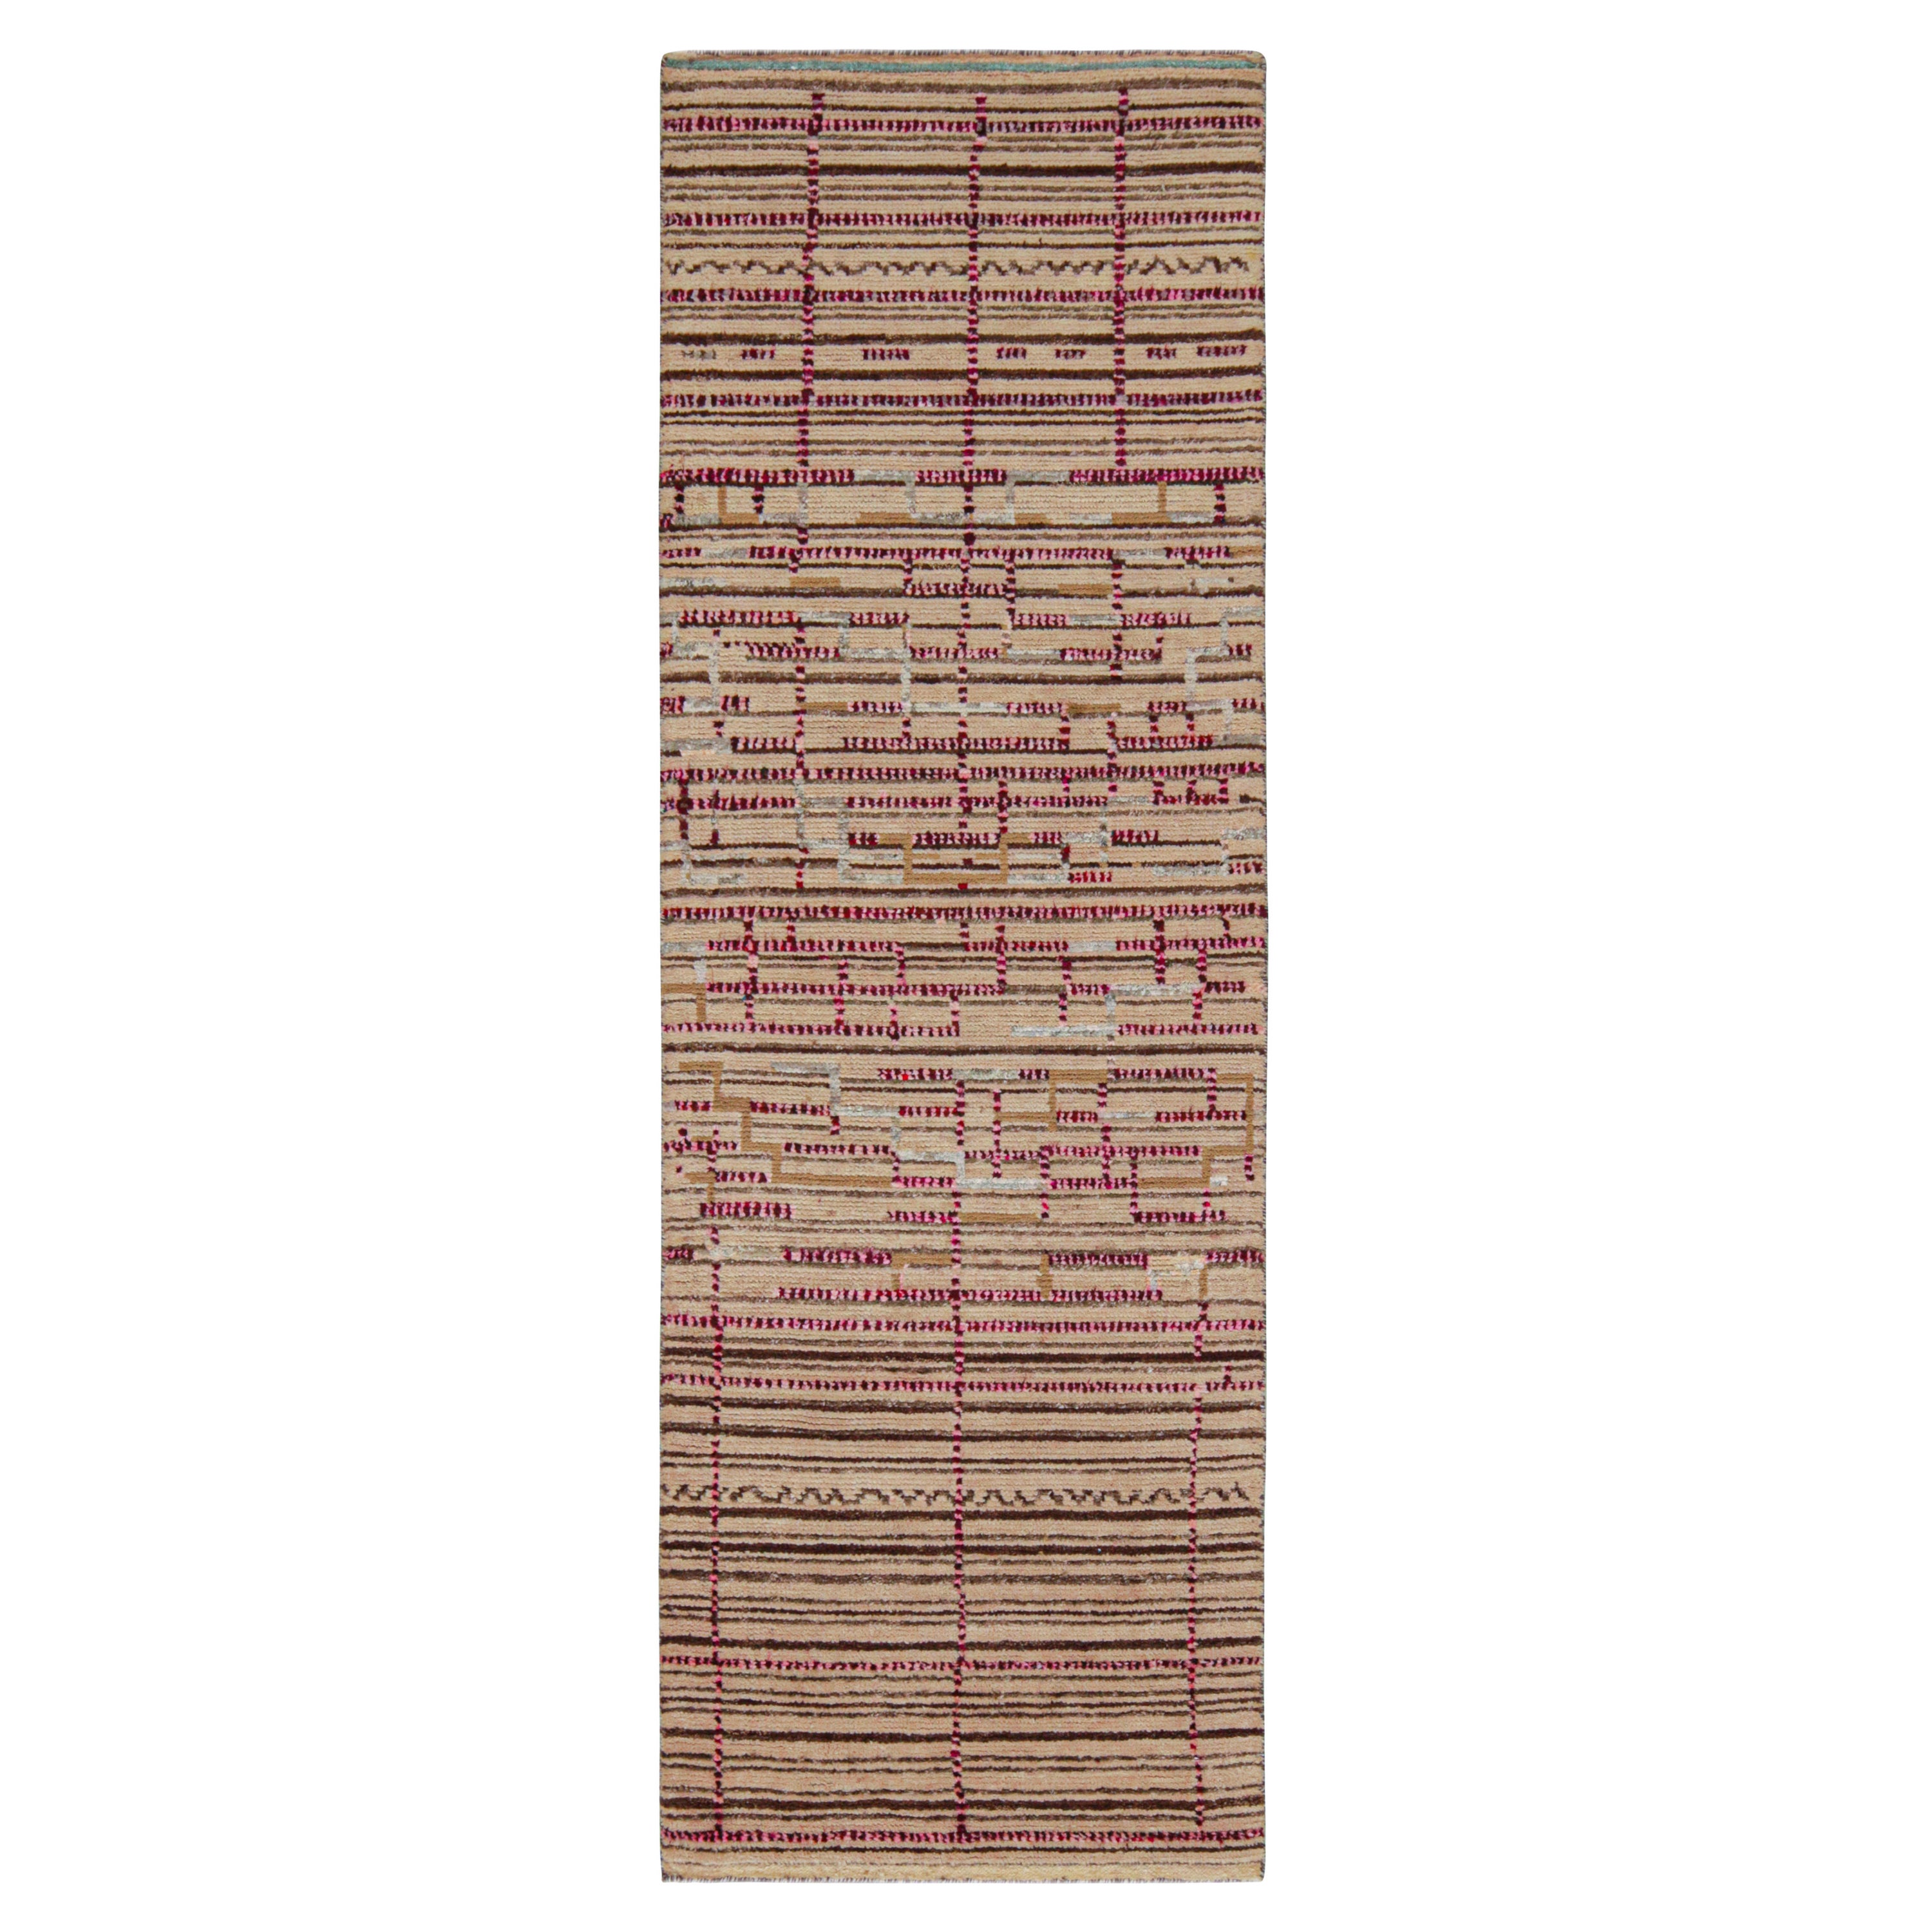 Tapis & Kilim's Moroccan Style Runner in Beige-Brown and Pink Geometric Patterns (Tapis de course de style marocain aux motifs géométriques beige-brun et rose)